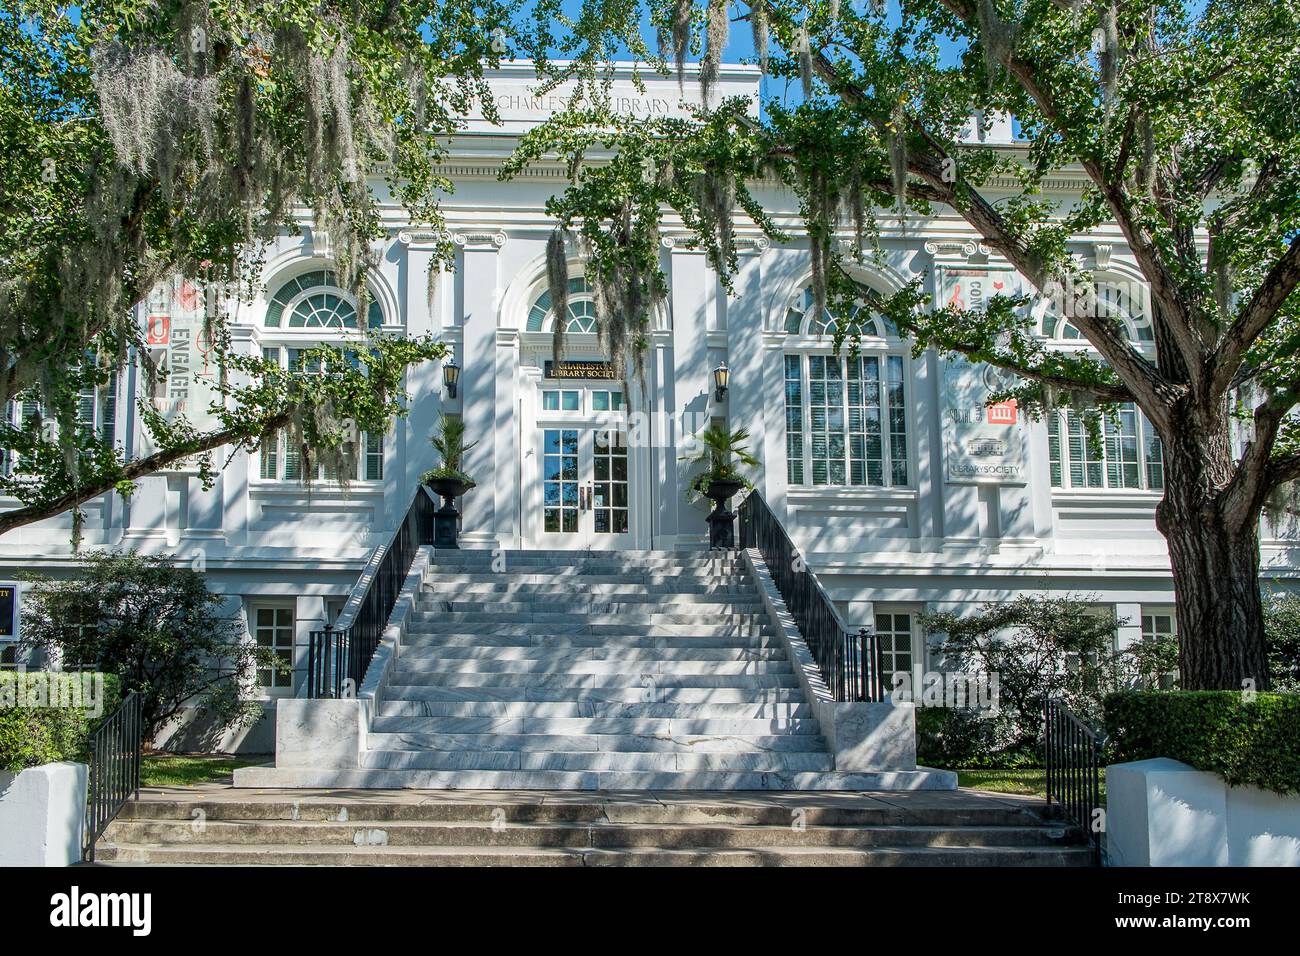 La Charleston Library Society è una biblioteca in abbonamento risalente al 1748 e la più antica istituzione culturale nel sud degli Stati Uniti. Foto Stock